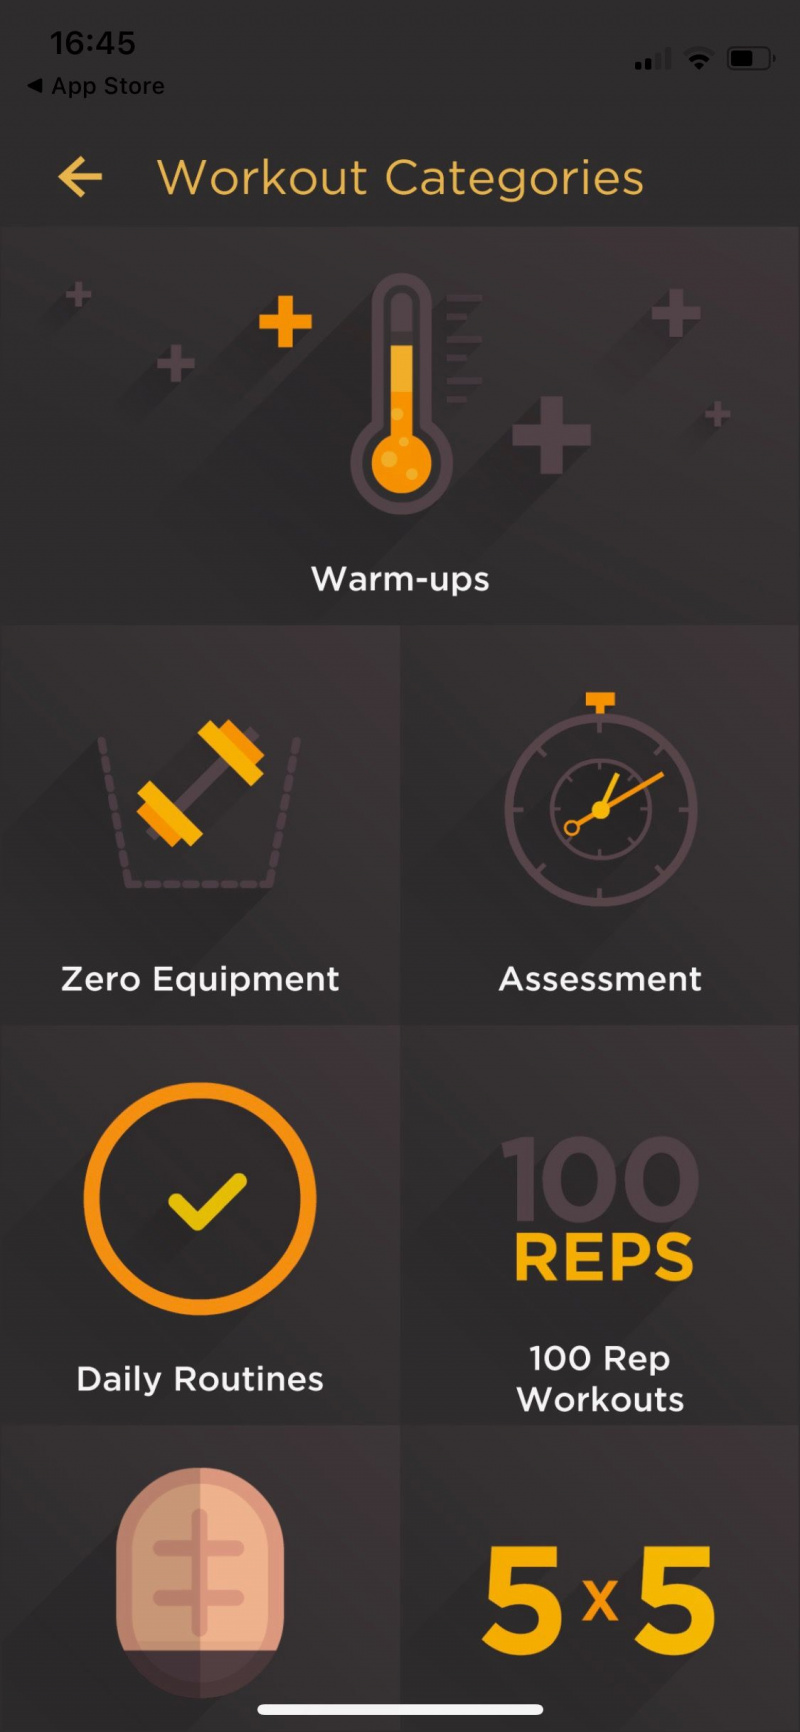   Snimka zaslona aplikacije Al Kavado koja prikazuje kategorije vježbanja